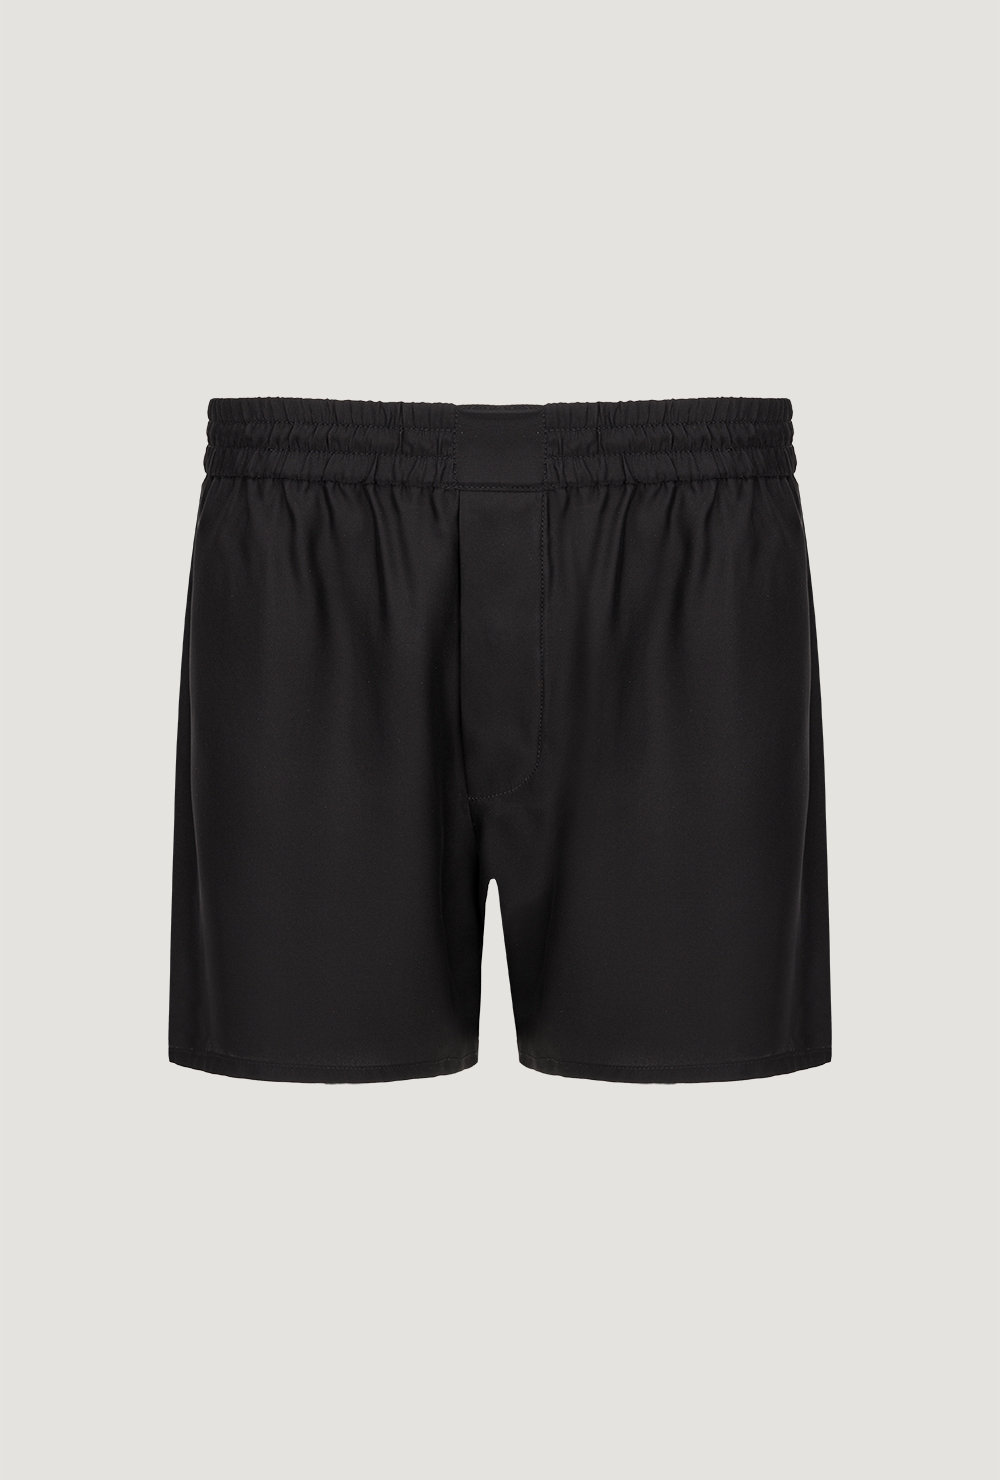 Black silk matte boxer shorts